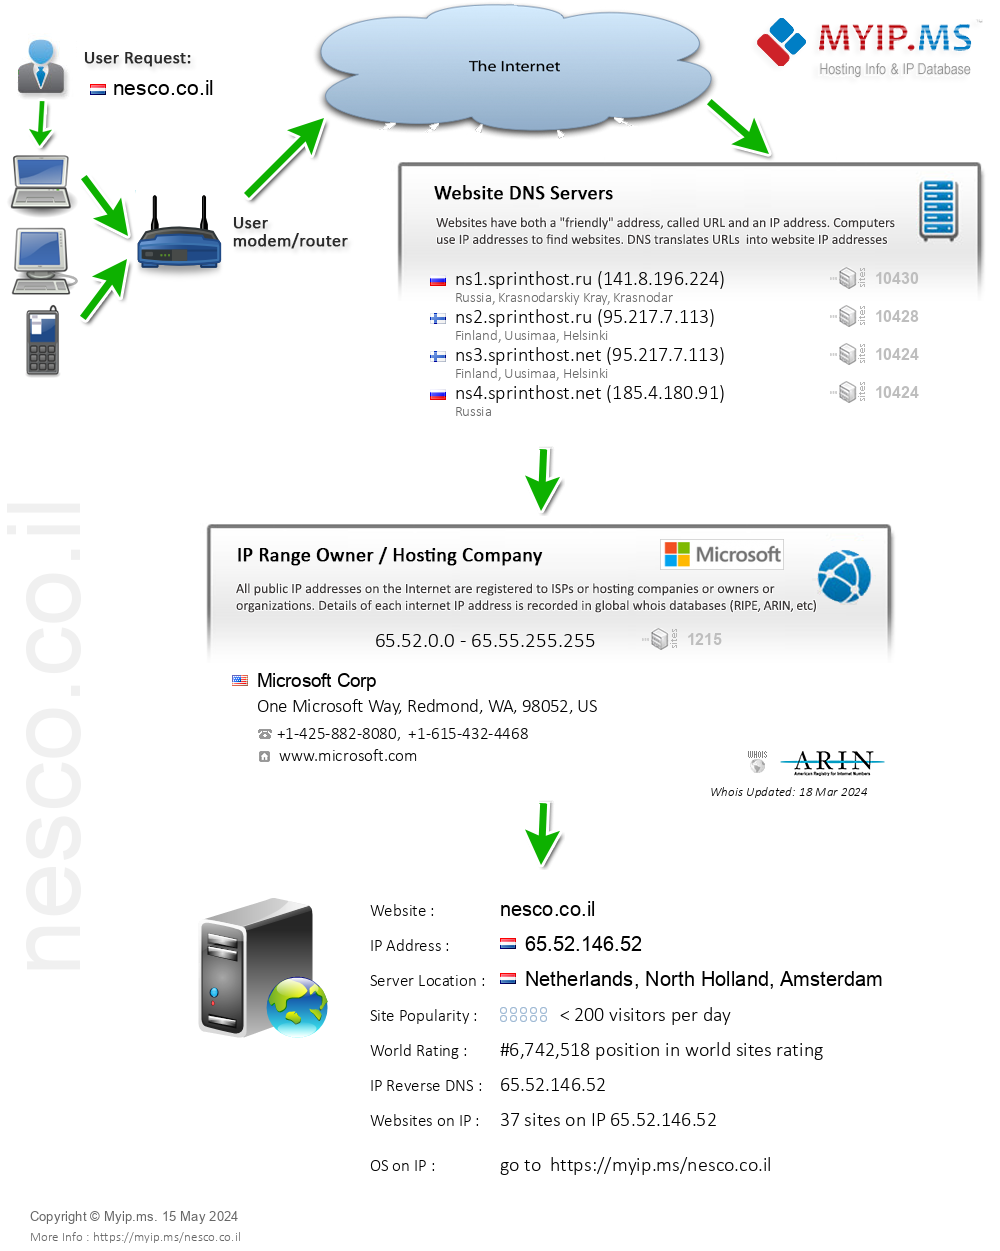 Nesco.co.il - Website Hosting Visual IP Diagram